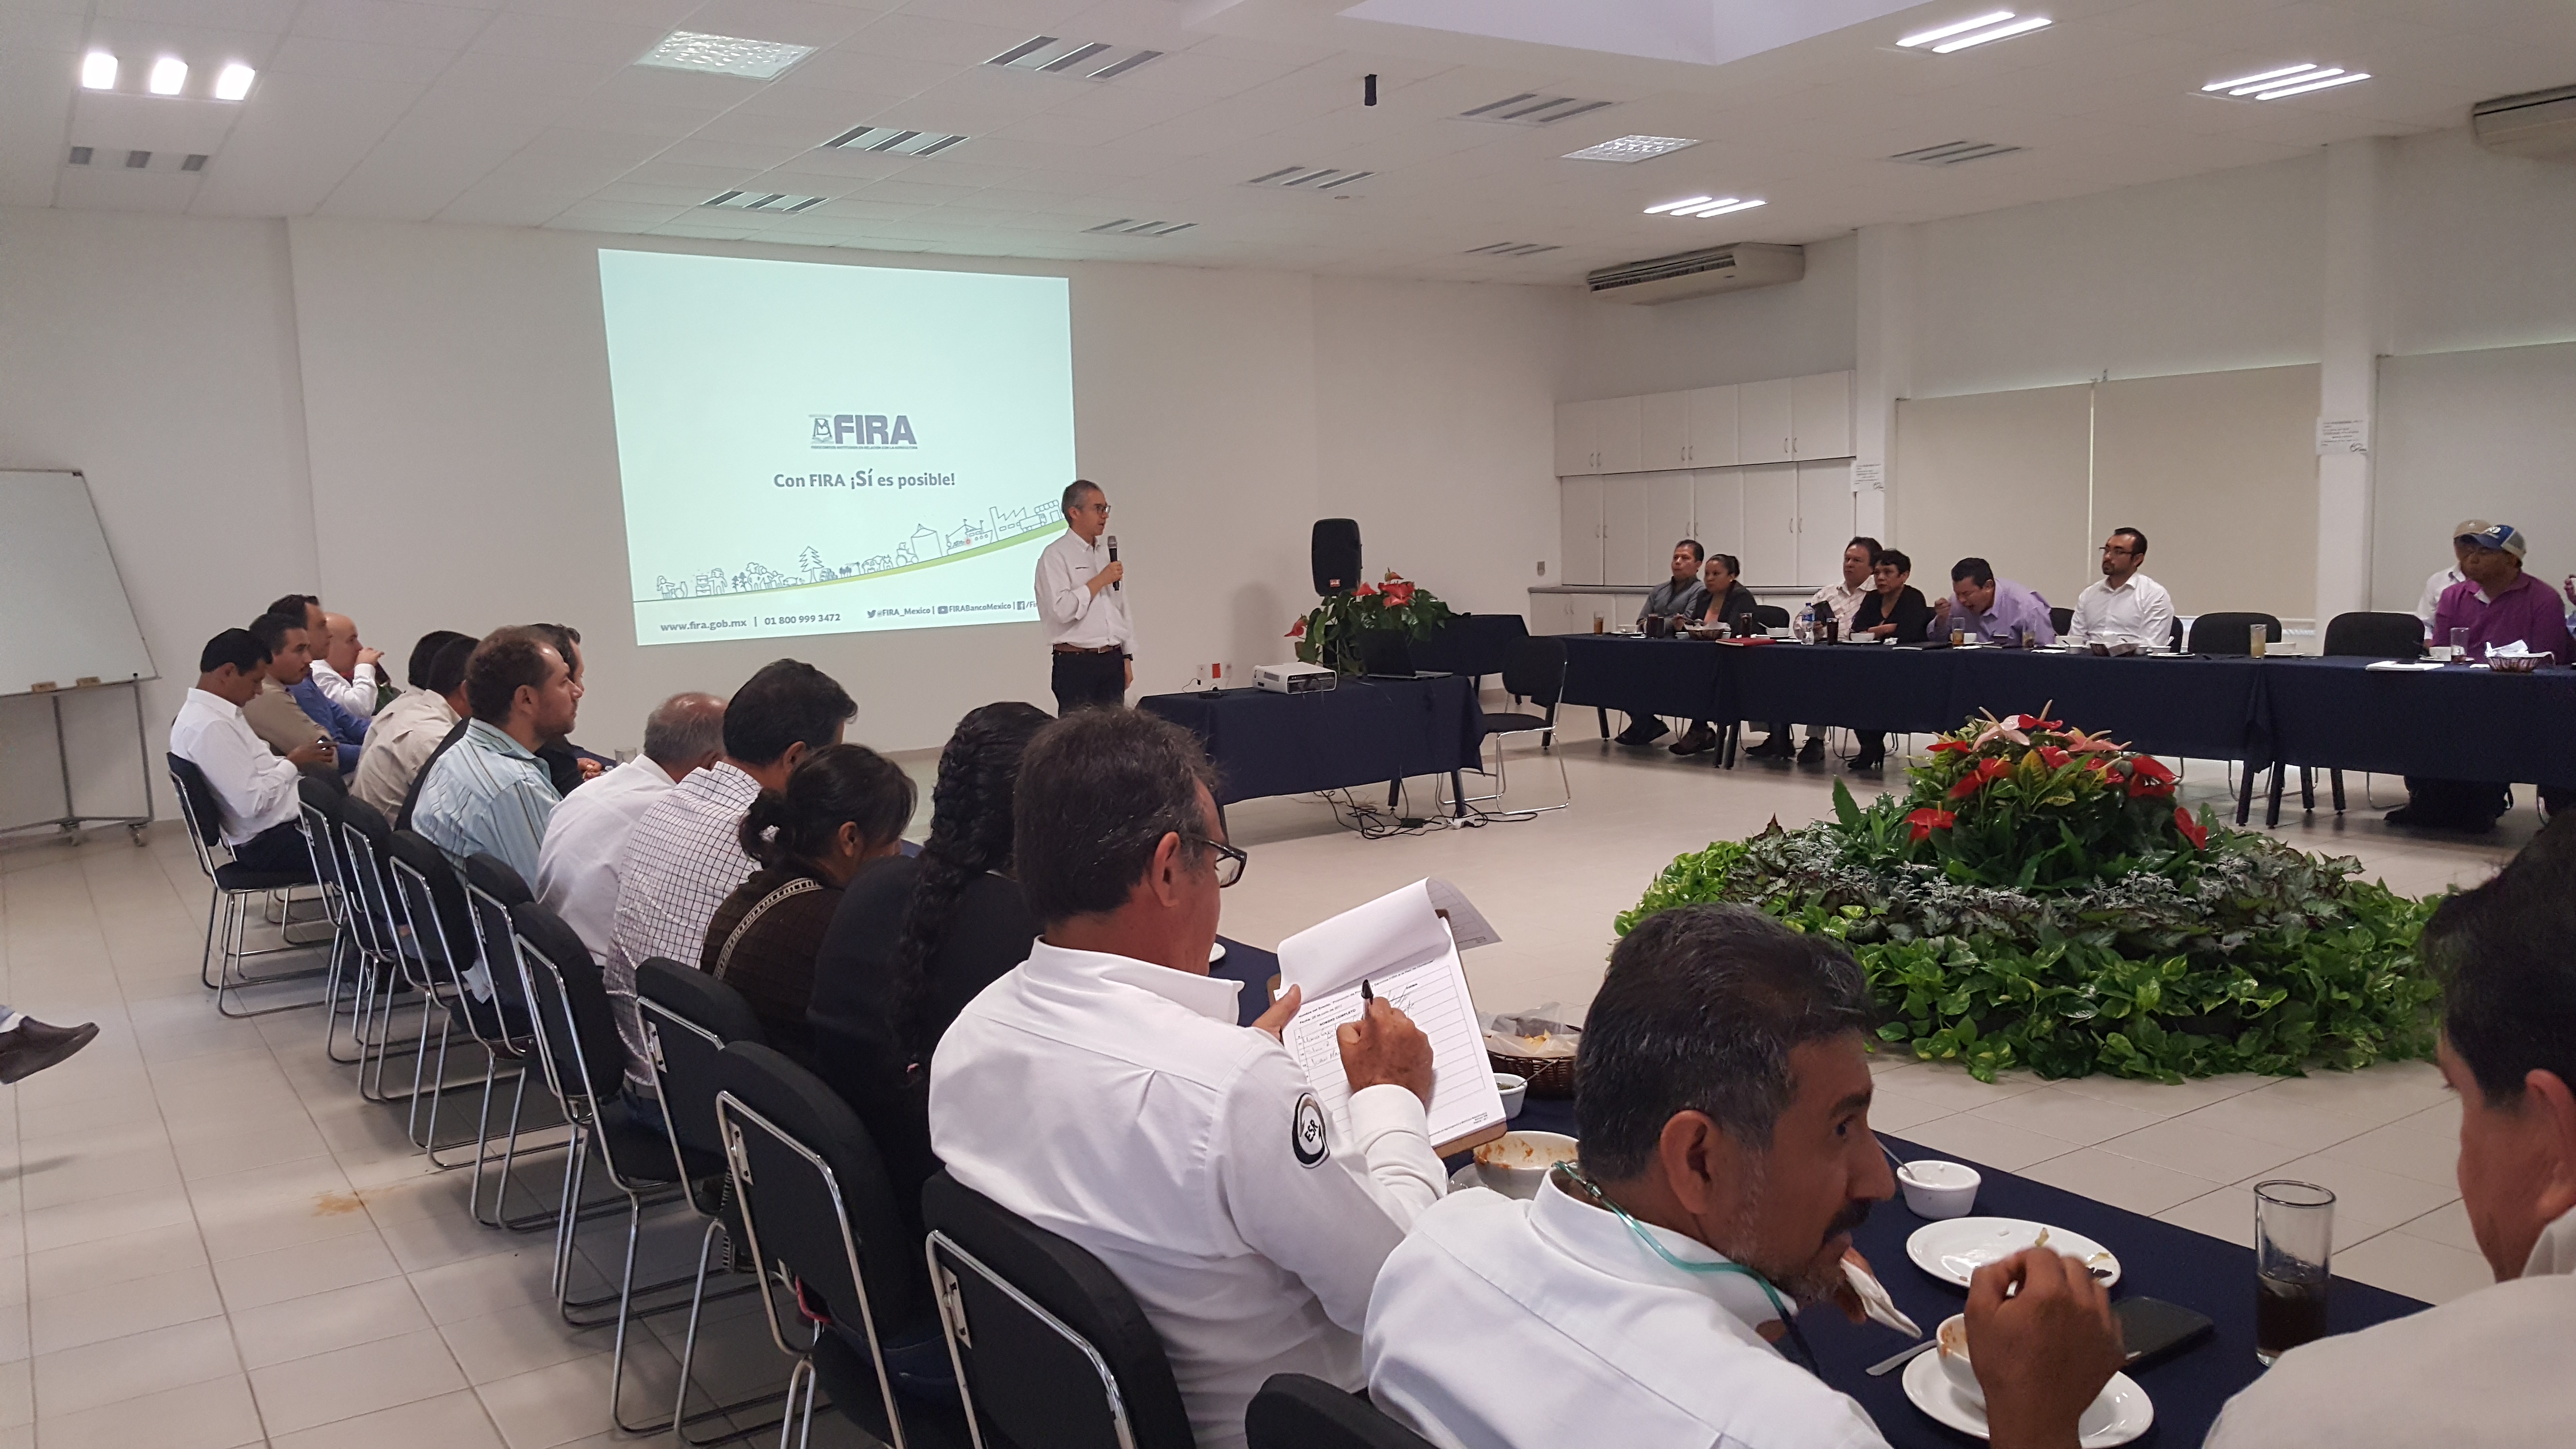 Impulsa FIRA la asistencia técnica y capacitación en Morelos a través del CDT Tezoyuca